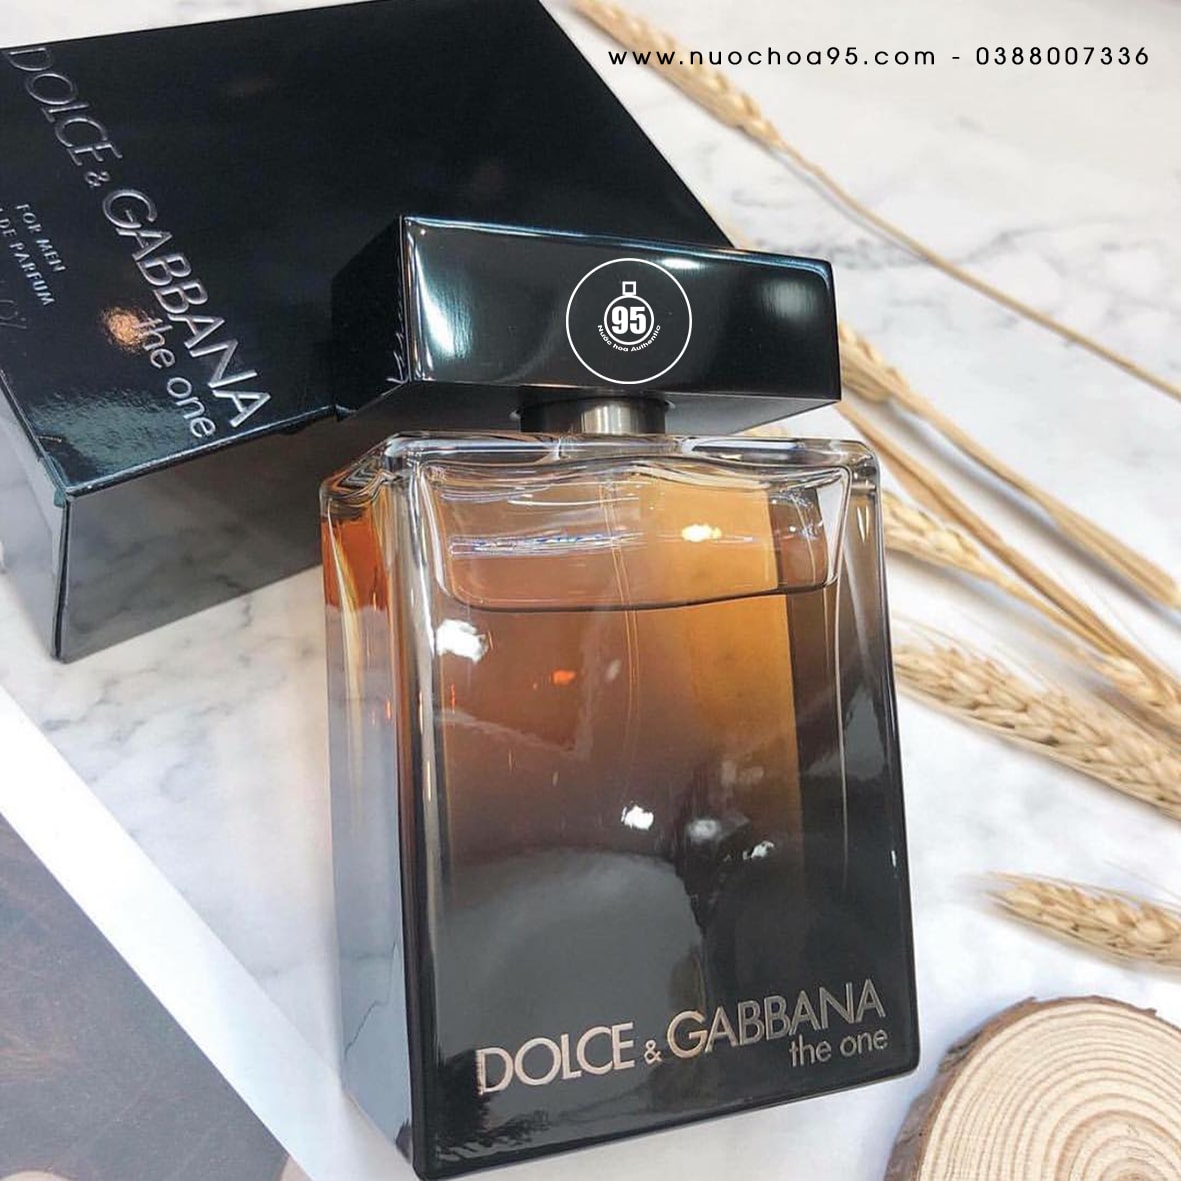 Review nước hoa Dolce Gabbana mùi nào thơm nhất? - Ảnh 2